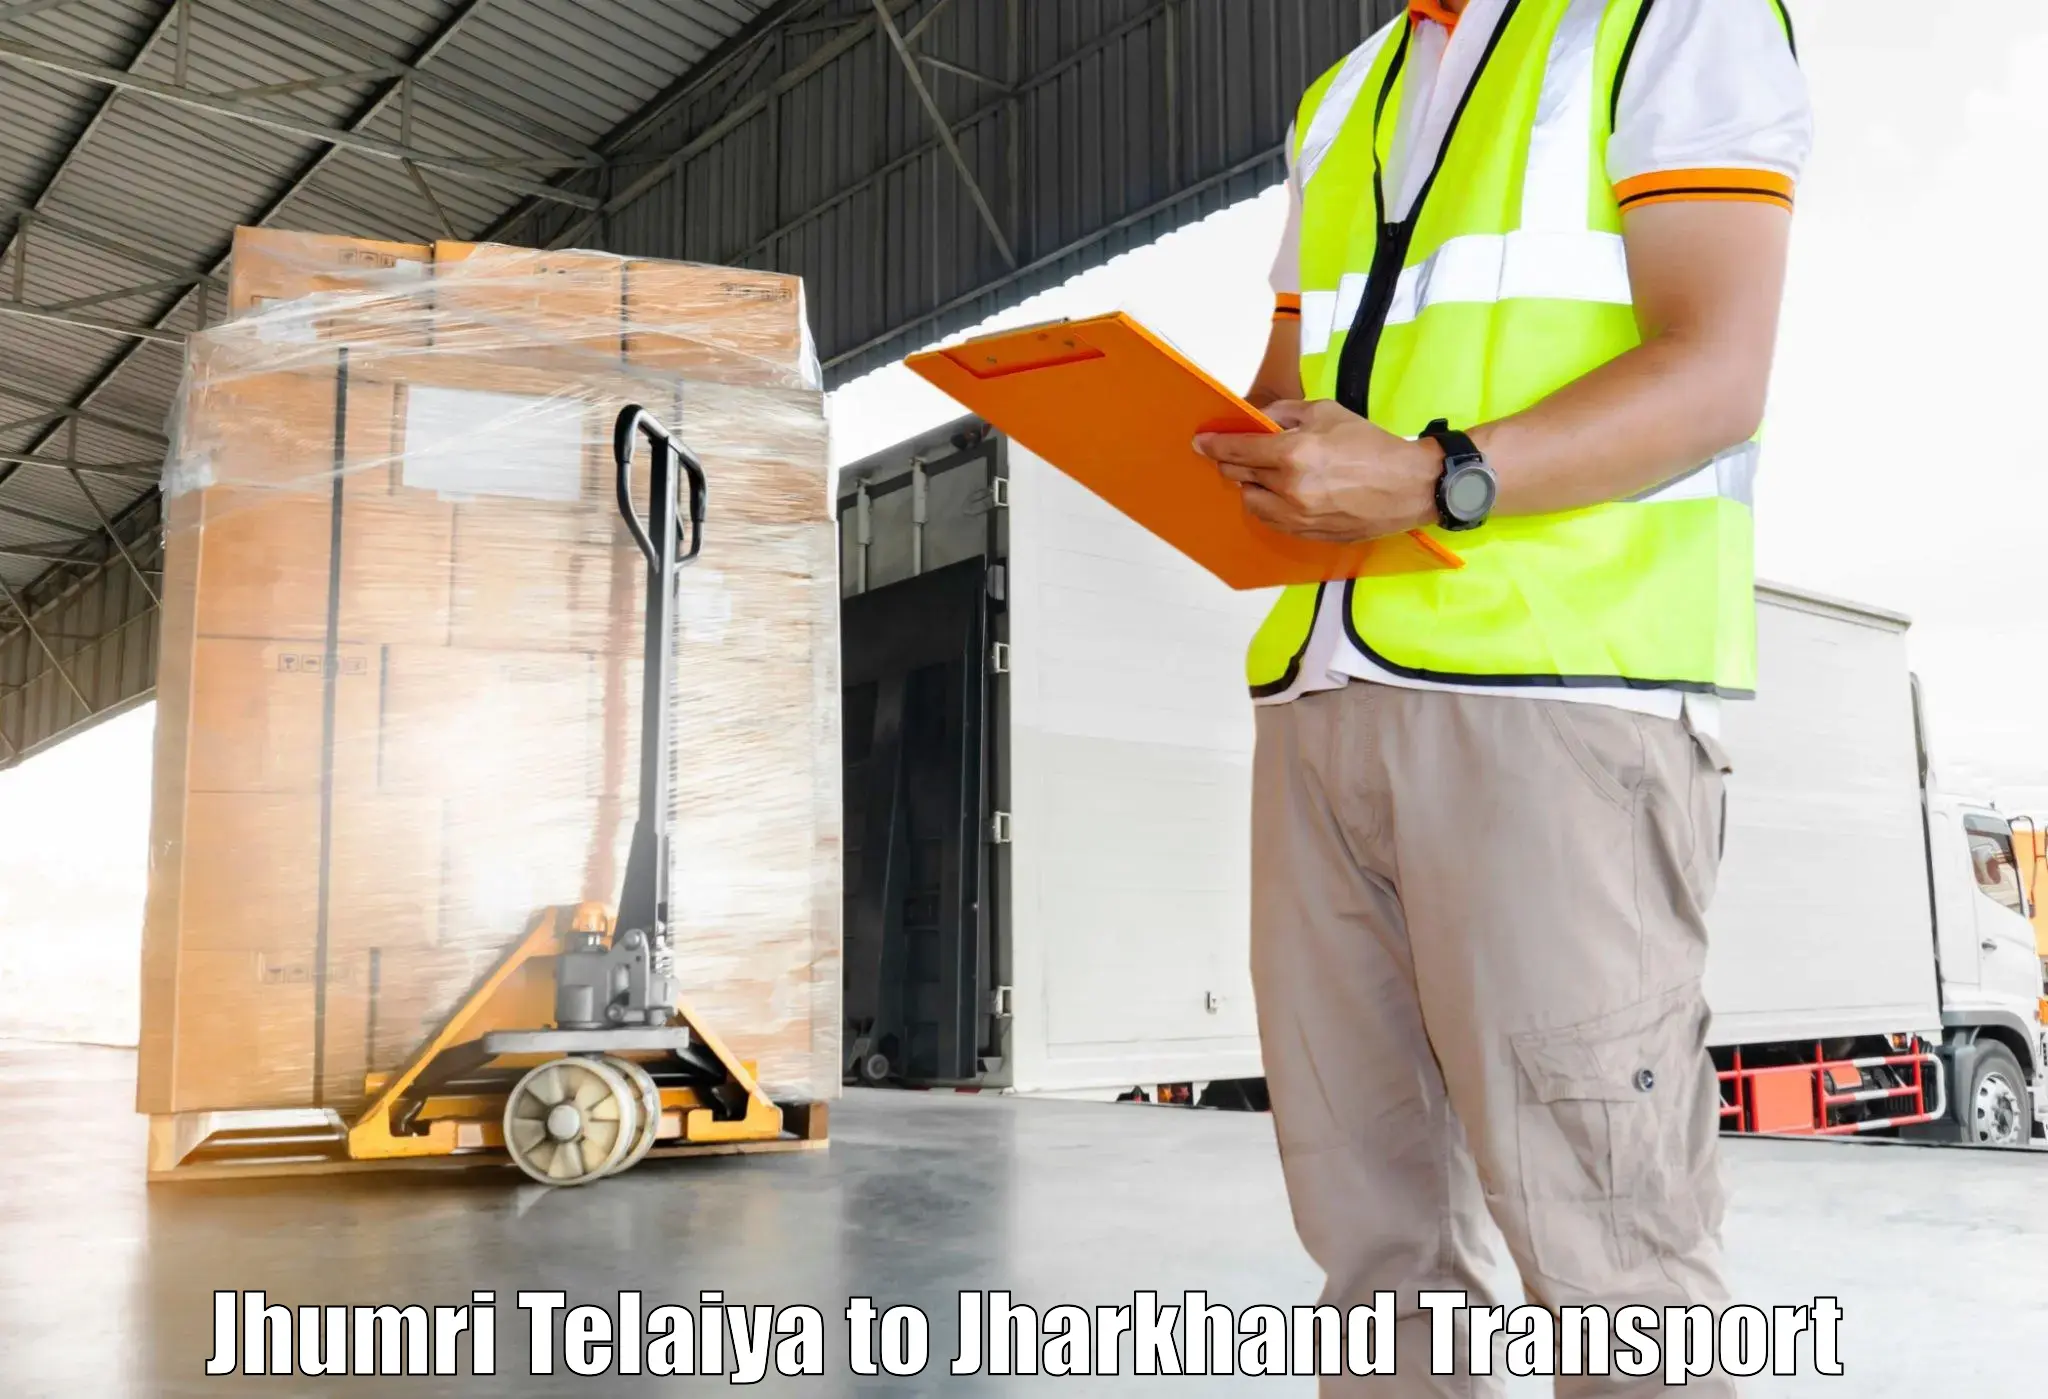 Container transportation services Jhumri Telaiya to Rajmahal